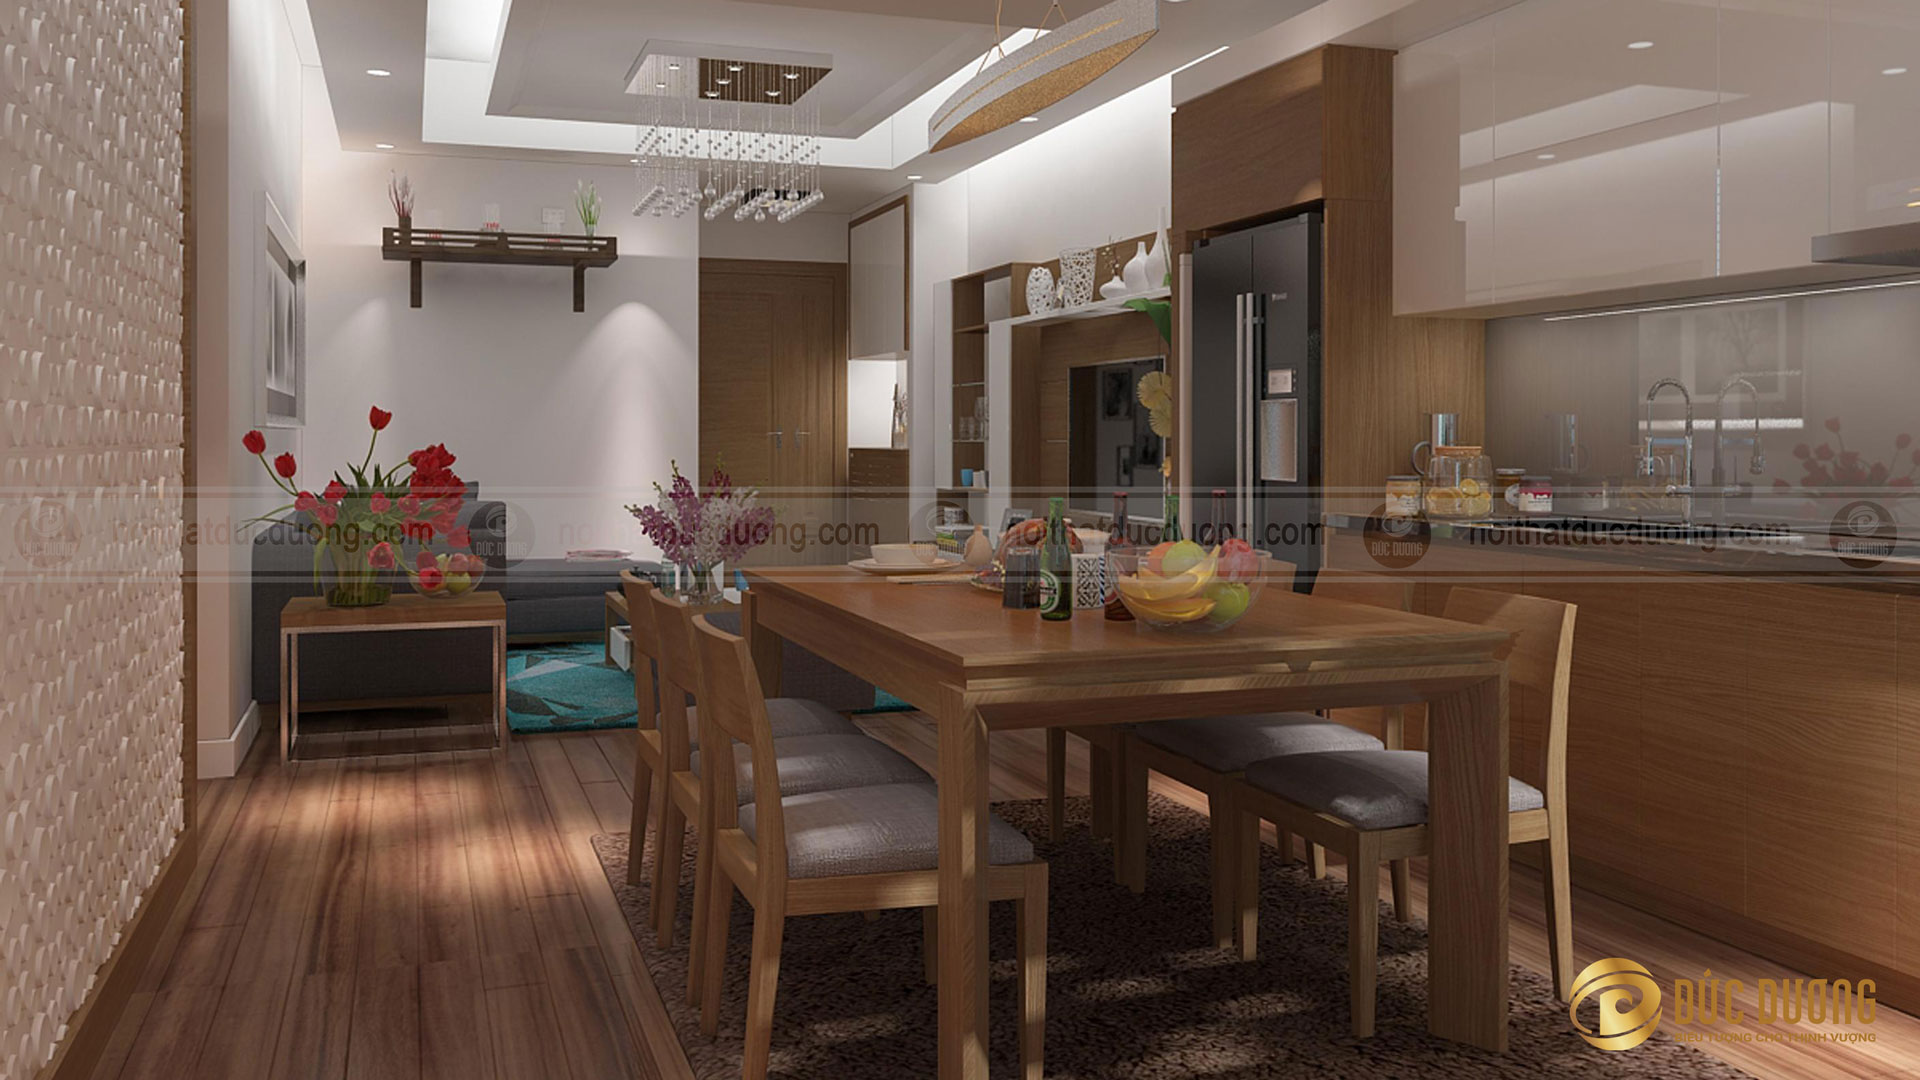 Mẫu thiết kế nội thất bếp ăn đẹp tại Hà Nội